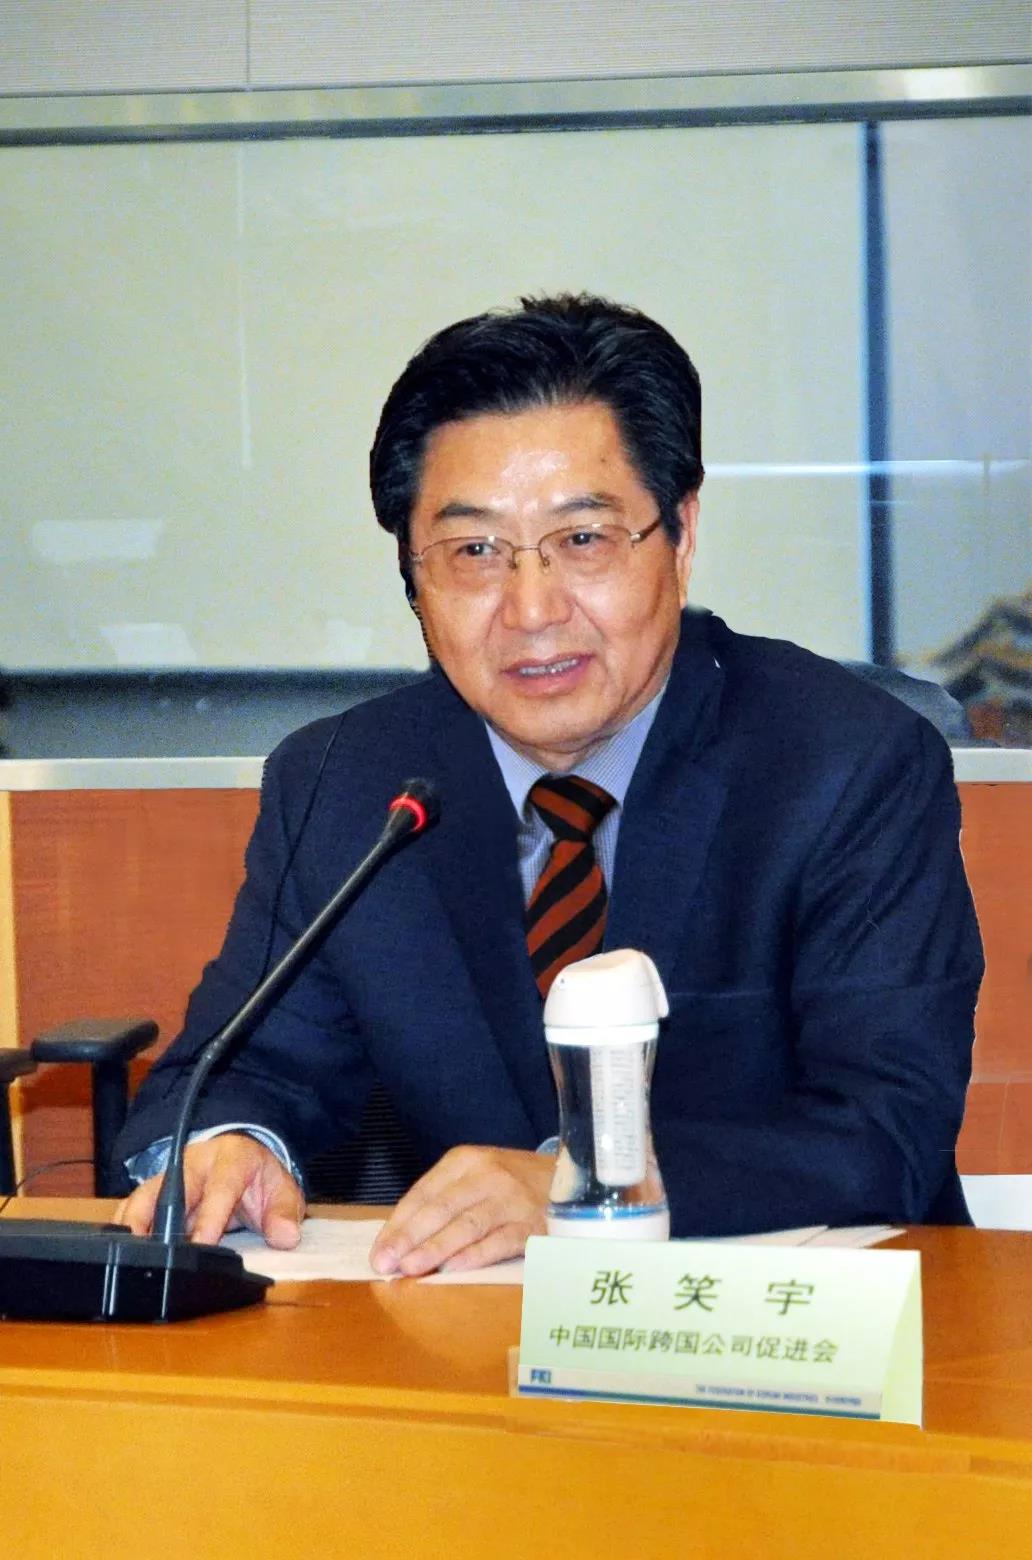 第八届中韩工商领袖合作论坛在韩国首尔成功举办